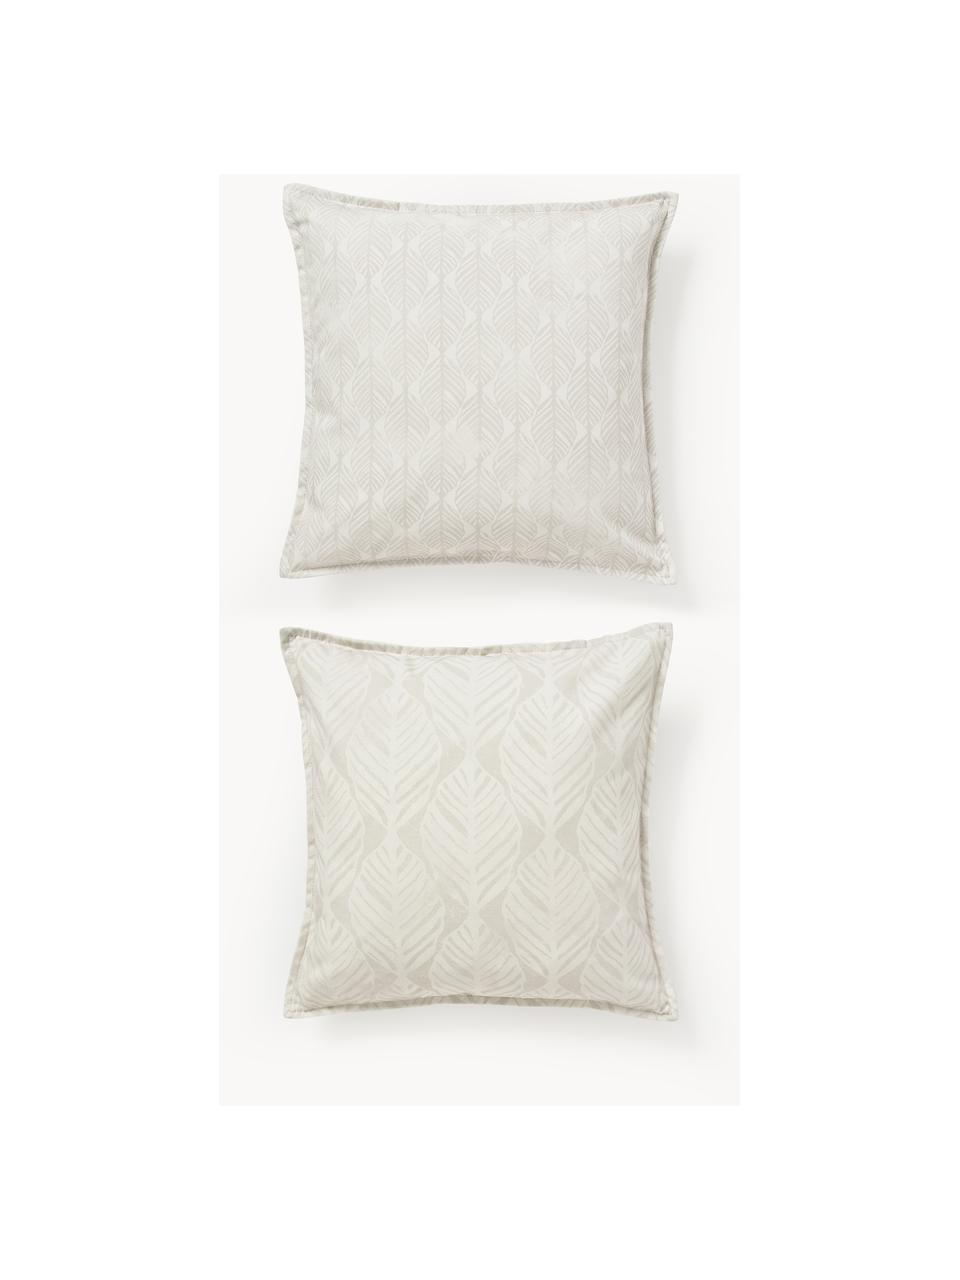 Kussenhoezen Armanda met grafisch patroon, set van 2, 80% polyester, 20% katoen, Lichtbeige, B 45 x L 45 cm